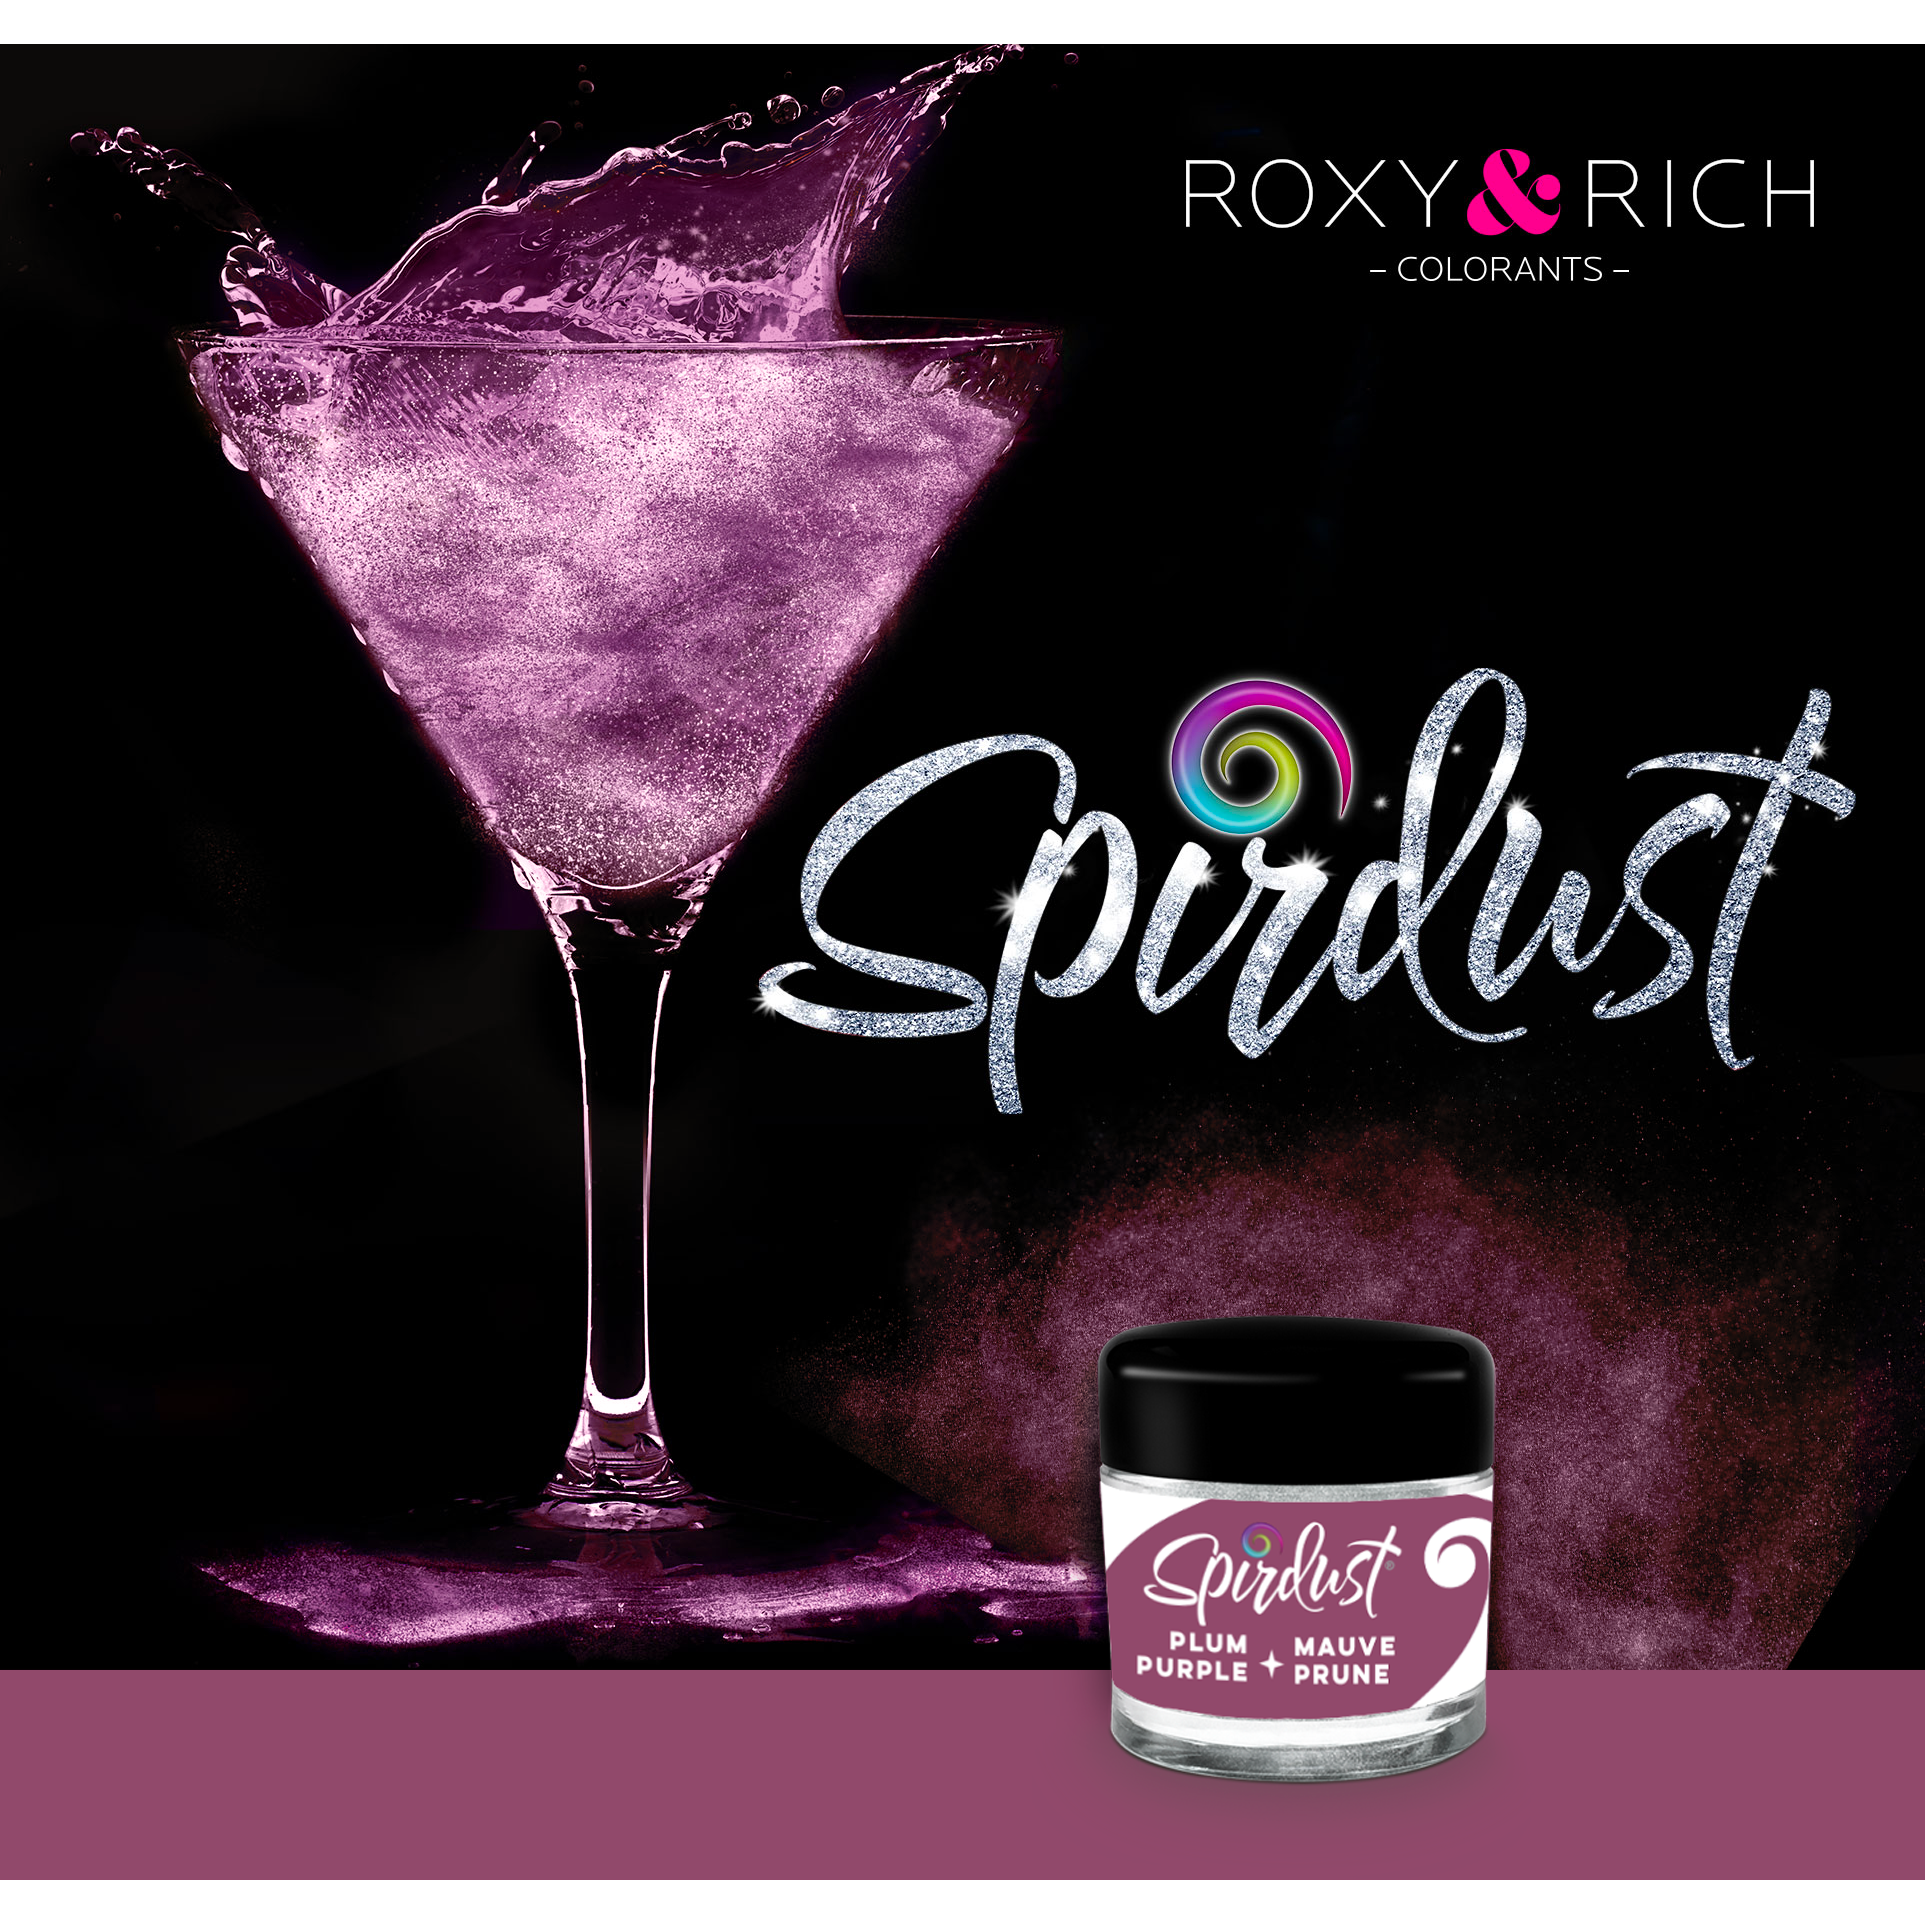 Metalická barva do nápojů Spirdust fialová 1,5g - Roxy and Rich